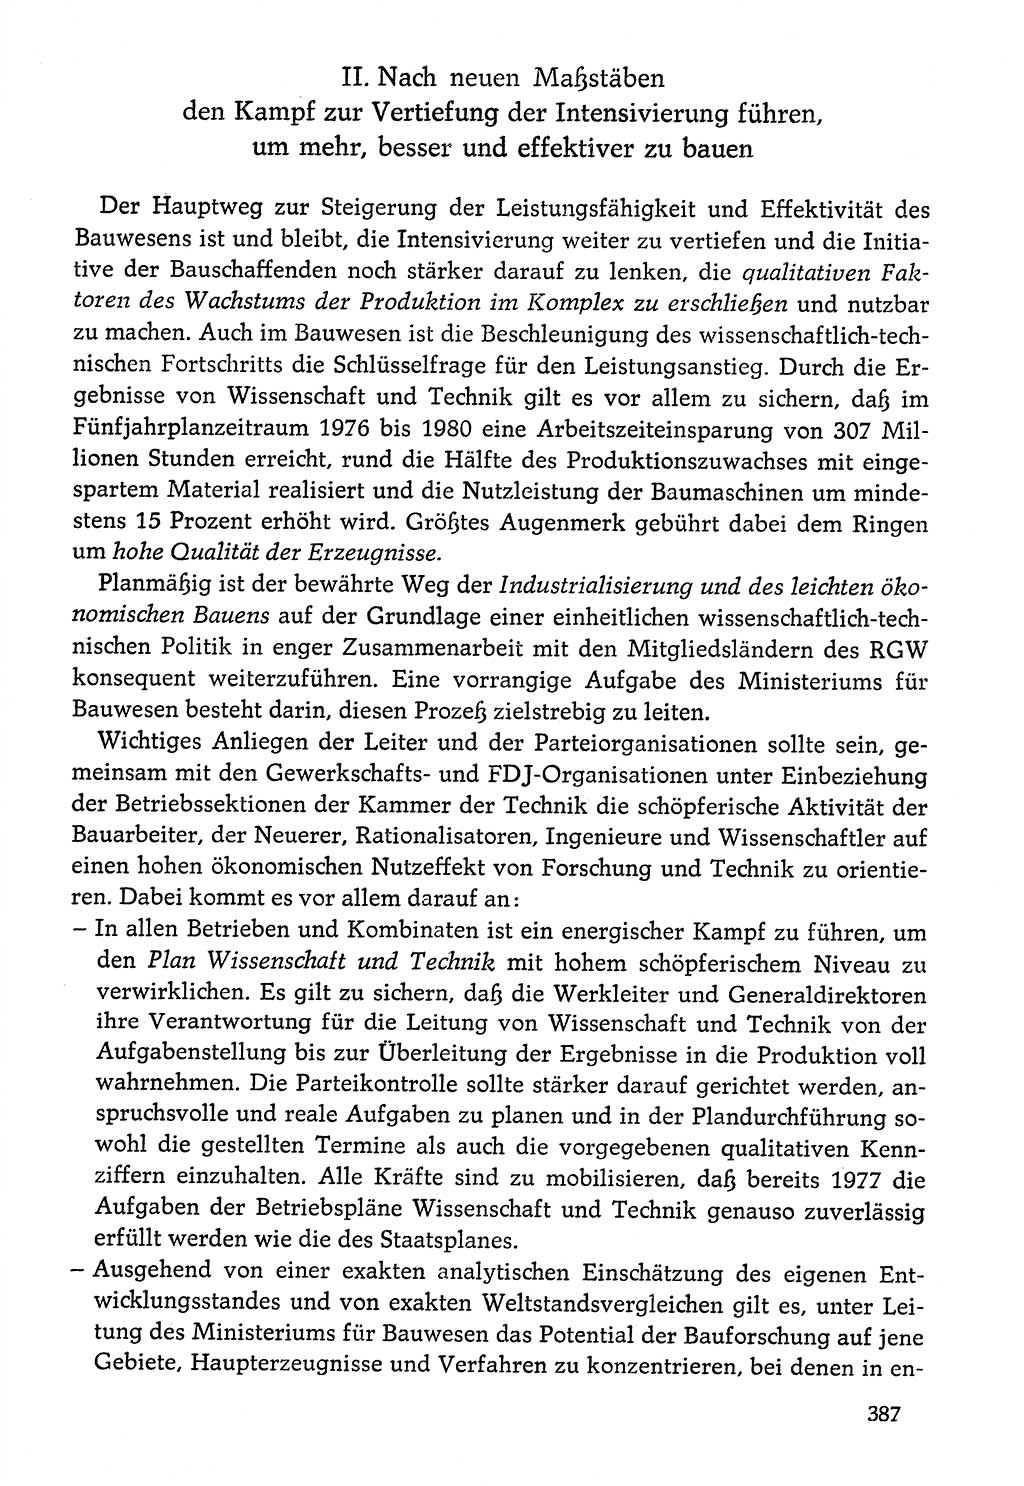 Dokumente der Sozialistischen Einheitspartei Deutschlands (SED) [Deutsche Demokratische Republik (DDR)] 1976-1977, Seite 387 (Dok. SED DDR 1976-1977, S. 387)